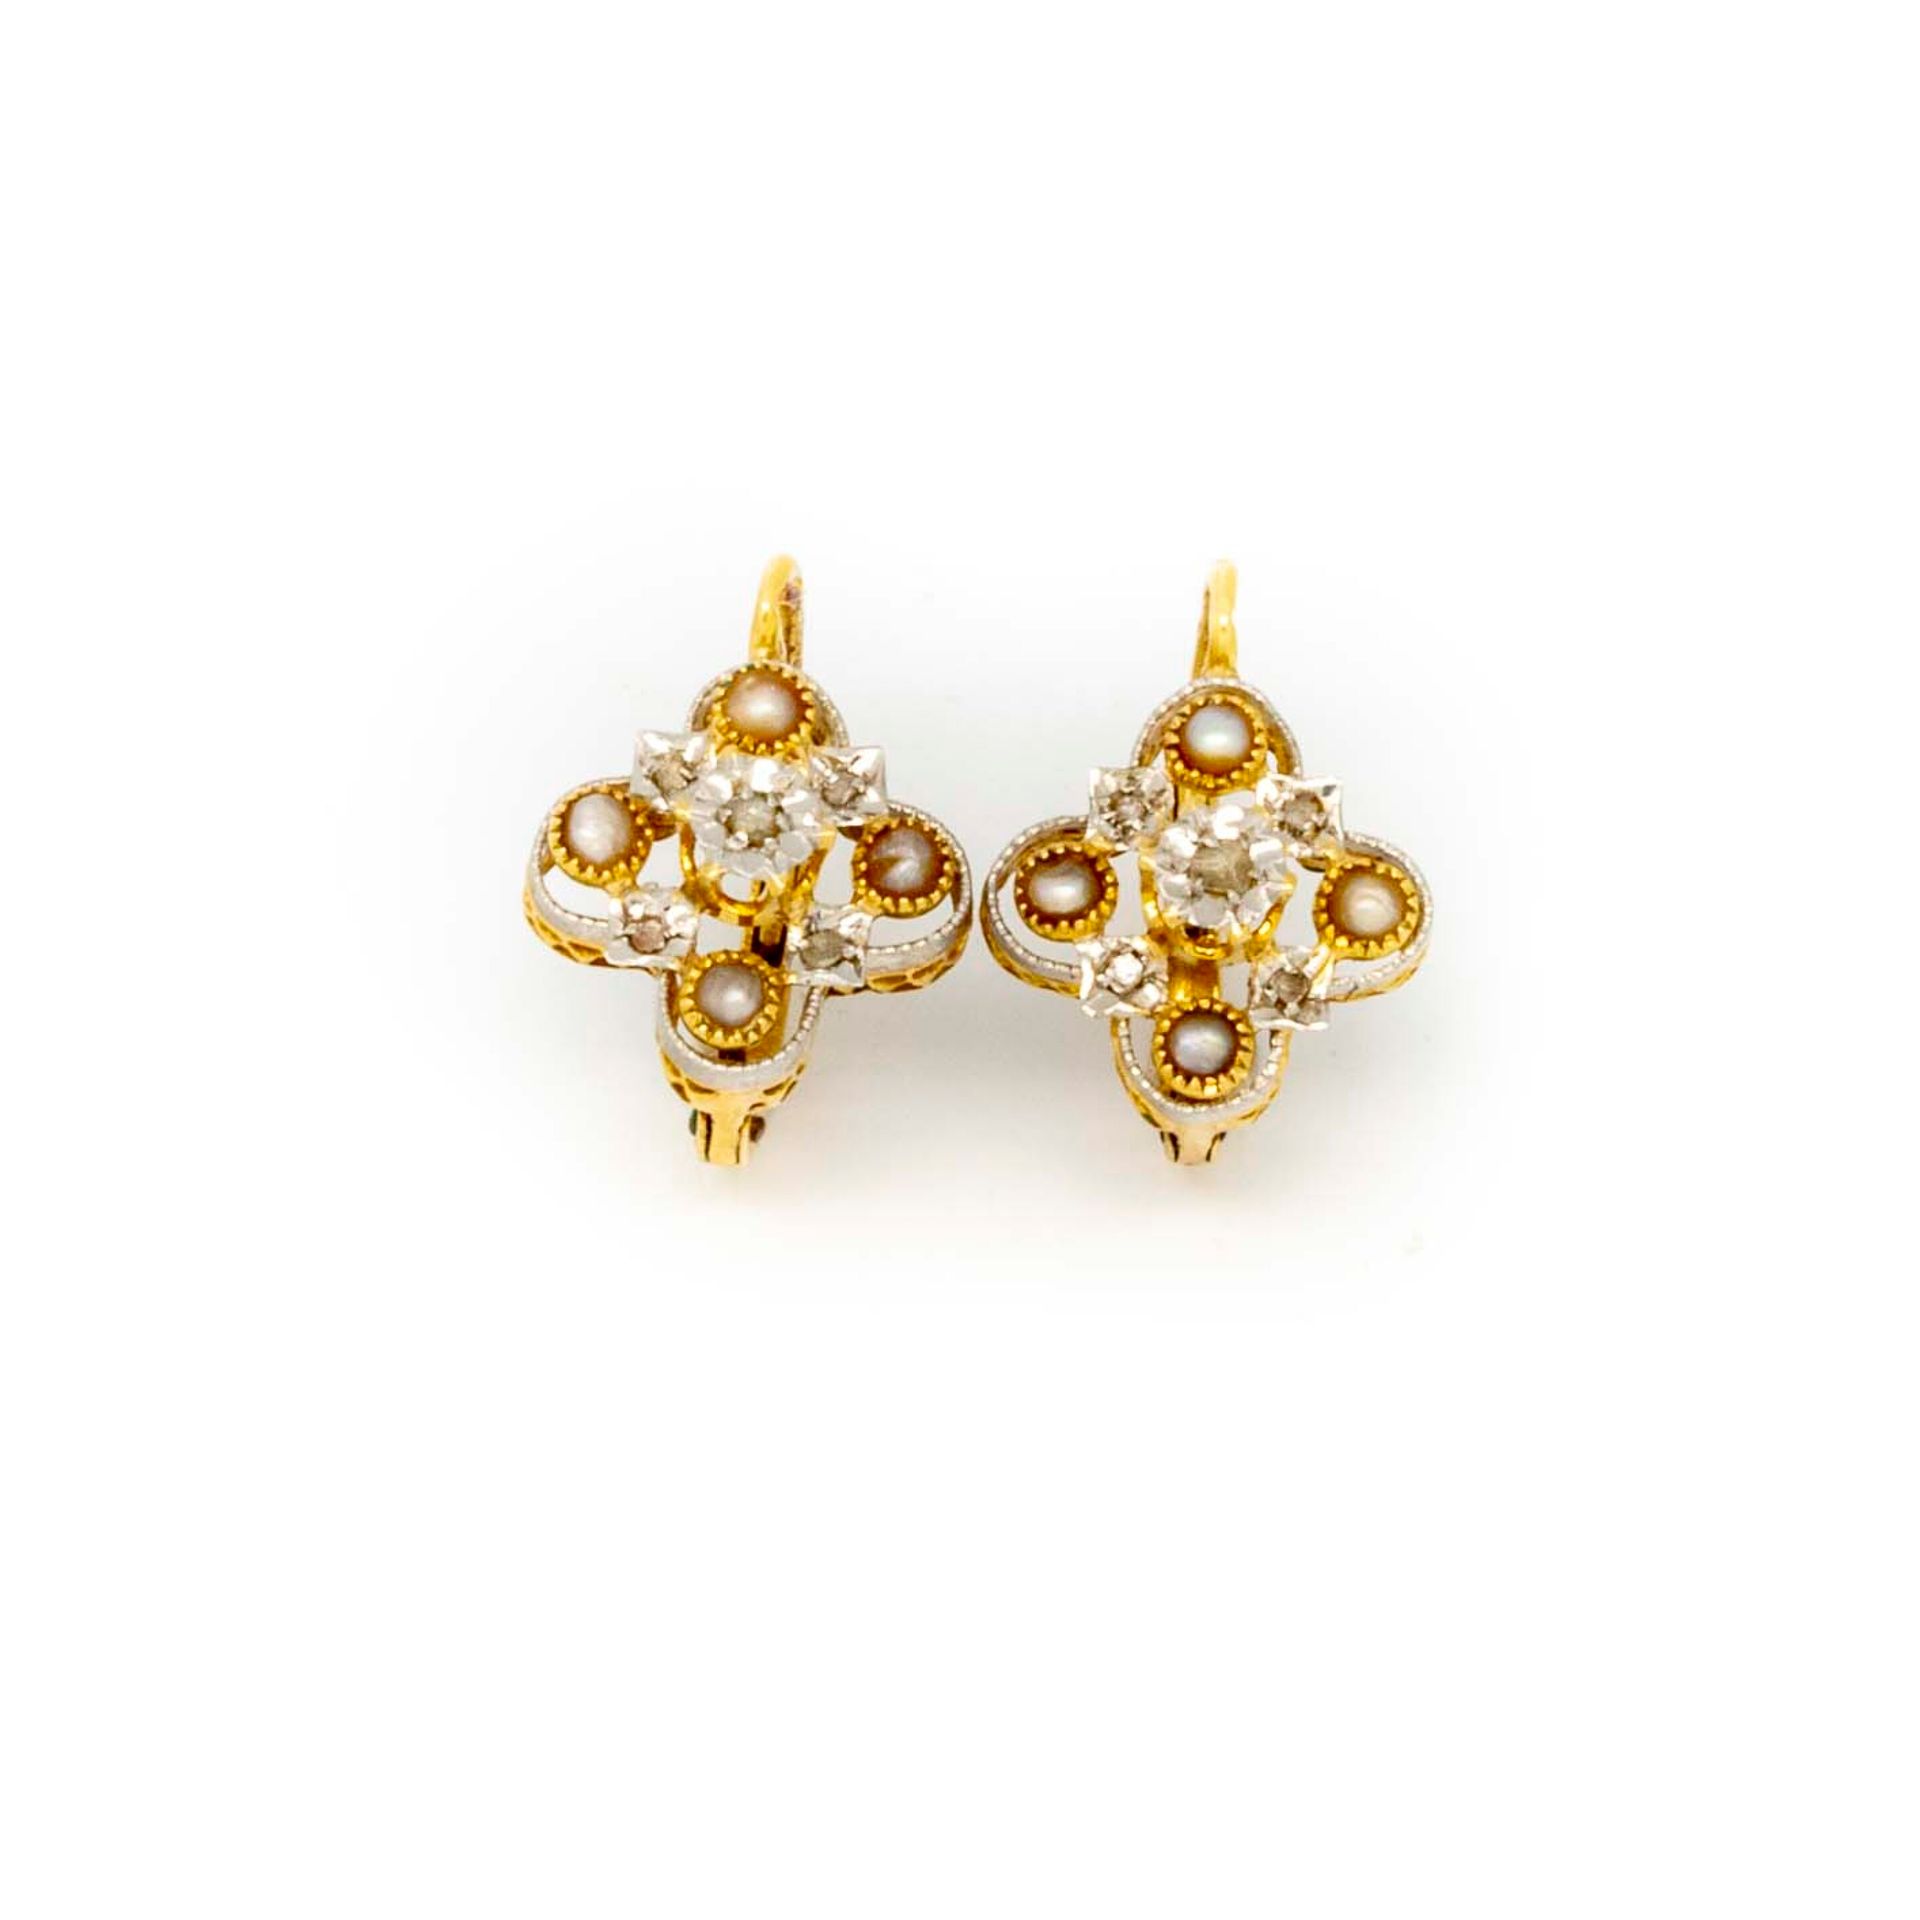 Null Coppia di orecchini in oro giallo, motivo a quadrifoglio con piccole perle
&hellip;